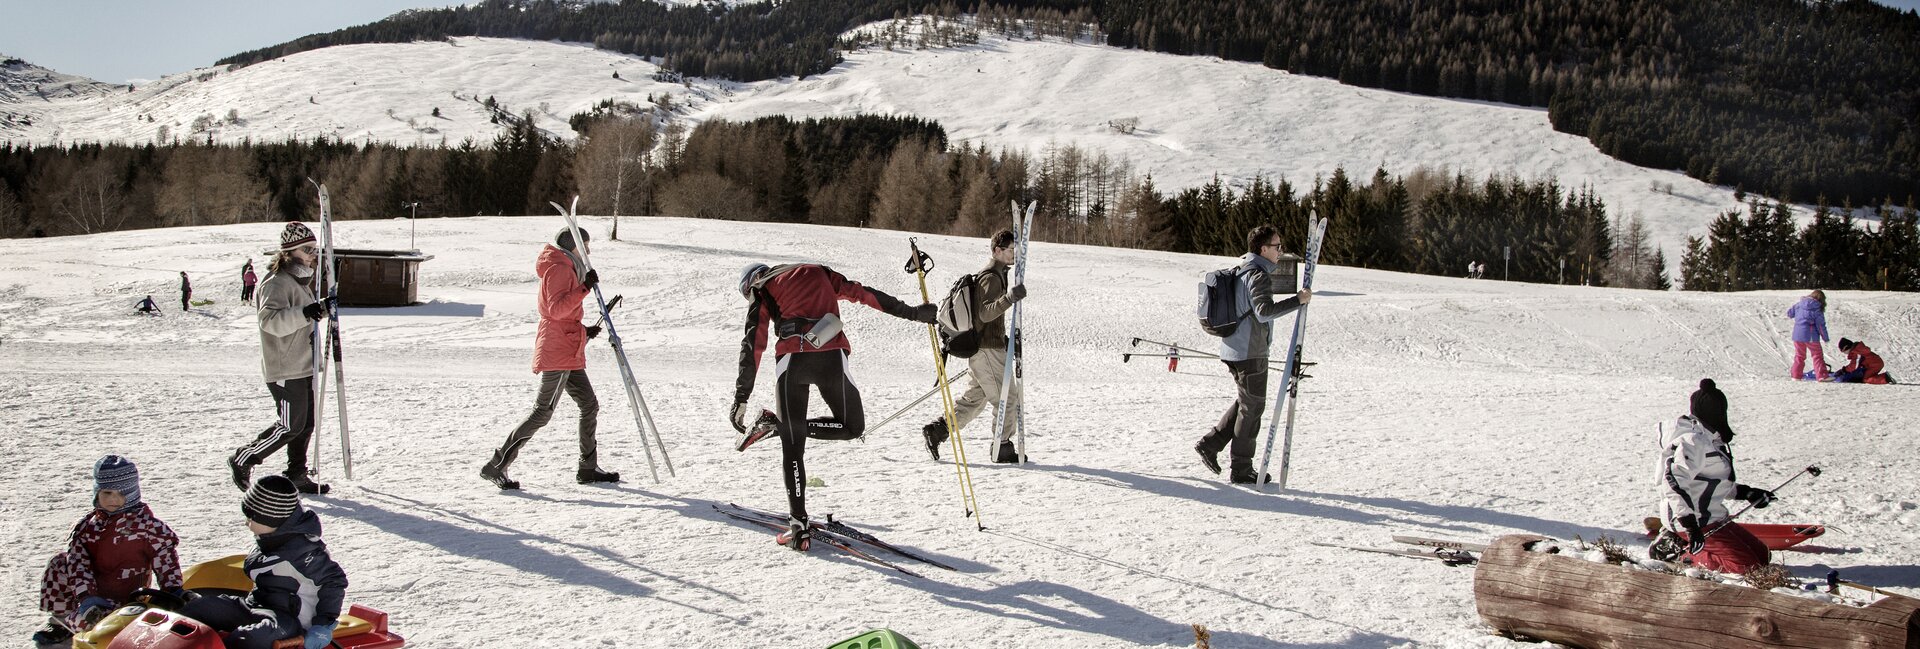 Trento - Monte Bondone - Viote - Sciatori si preparano